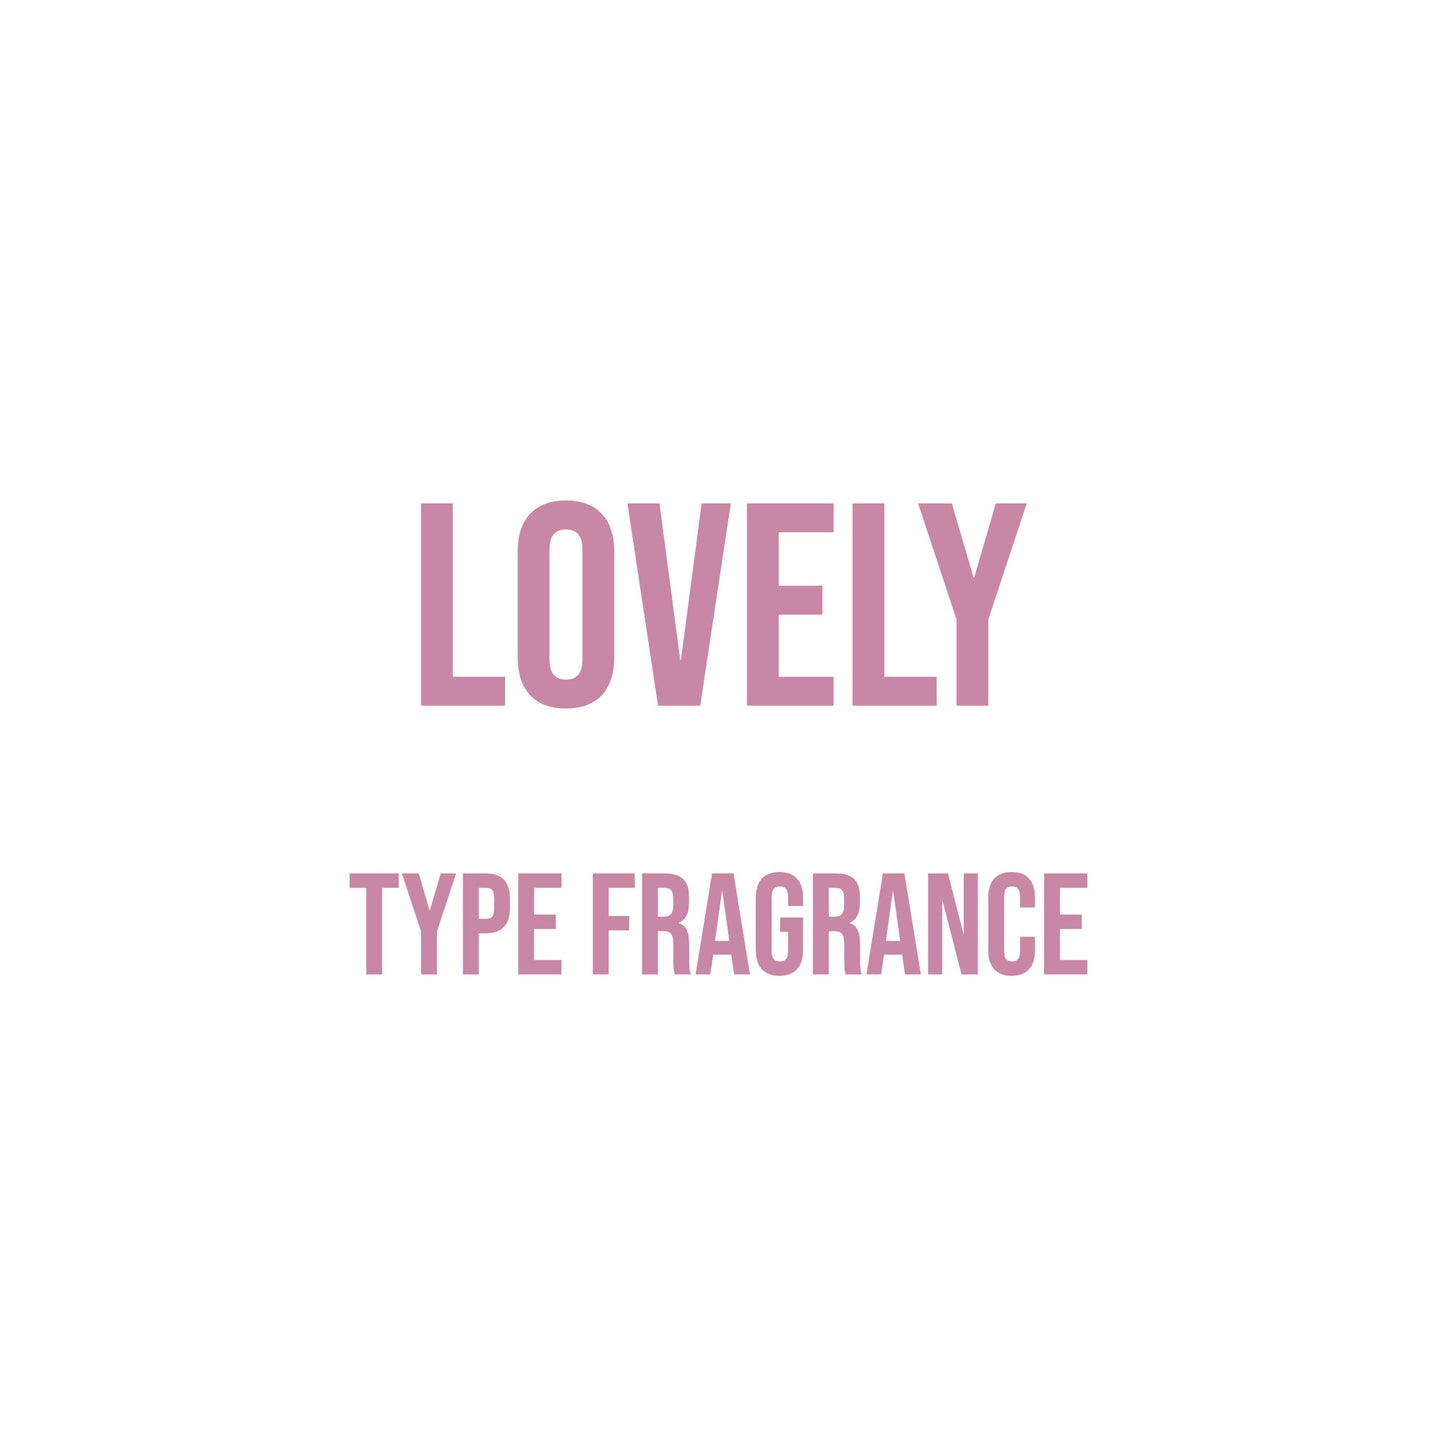 Lovely Type Fragrance